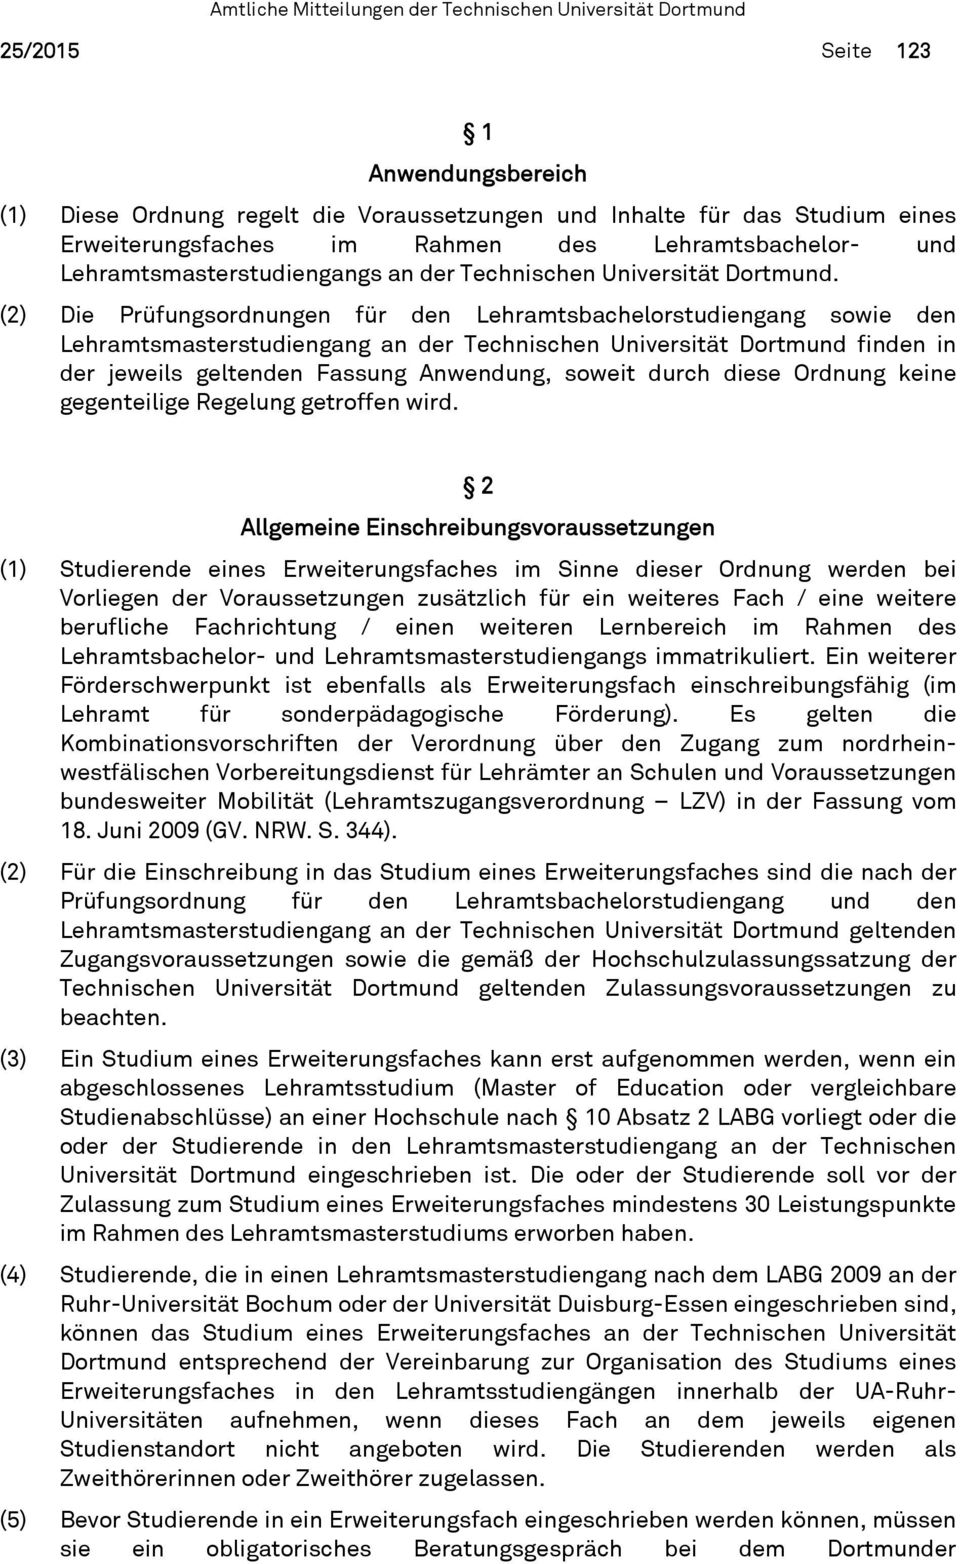 (2) Die Prüfungsordnungen für den Lehramtsbachelorstudiengang sowie den Lehramtsmasterstudiengang an der Technischen Universität Dortmund finden in der jeweils geltenden Fassung Anwendung, soweit